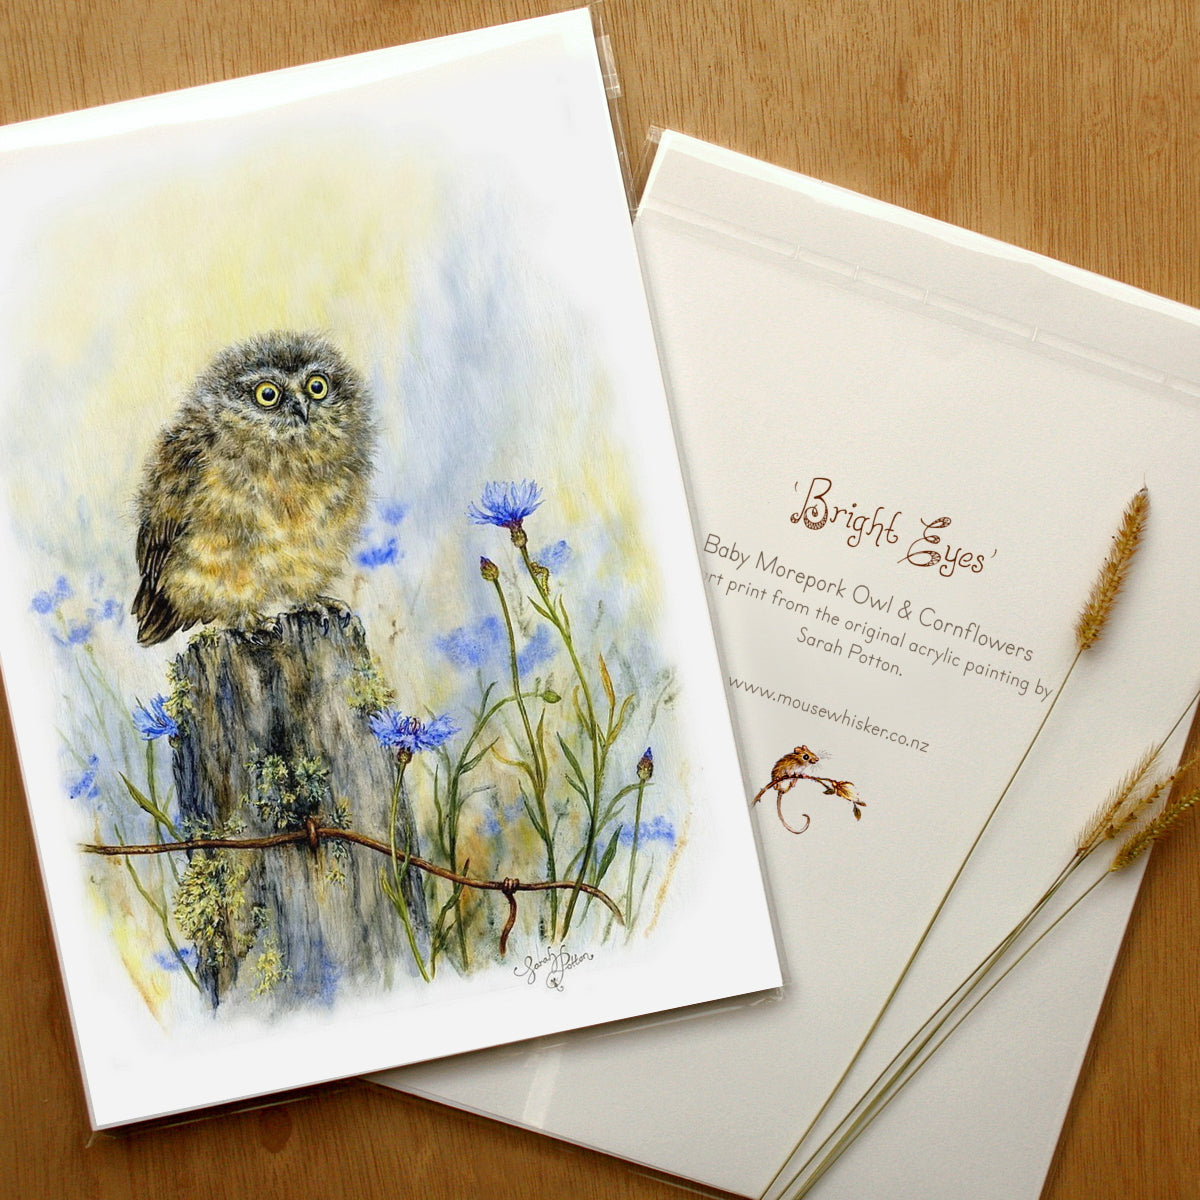 Morepork Owl - Framed Art Prints for Sale by NZ Artist - Bird Lover Gift